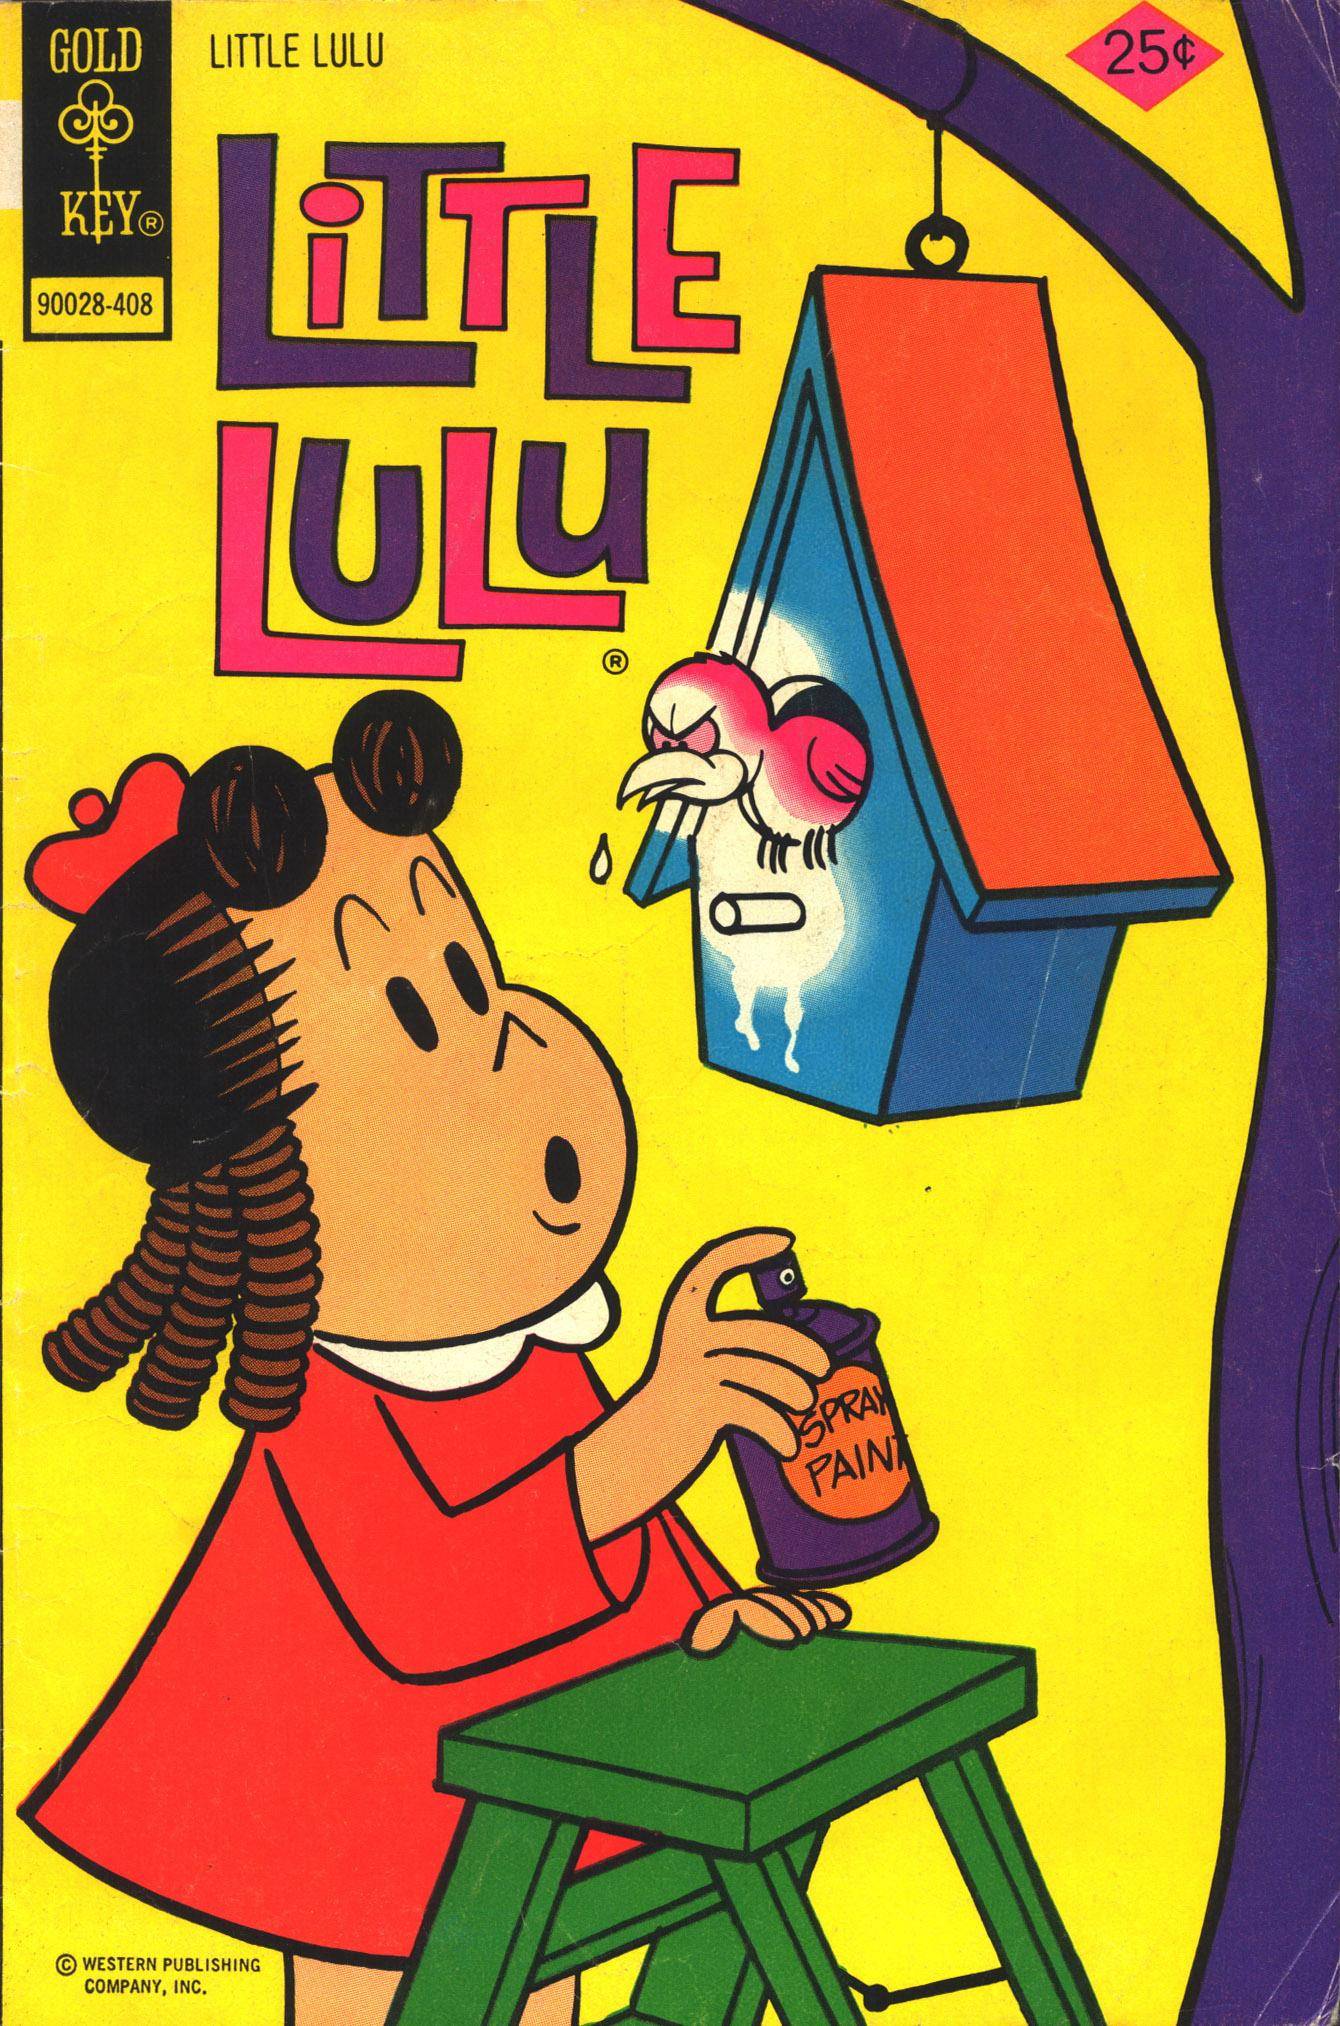 Little Lulu 1974-08 220